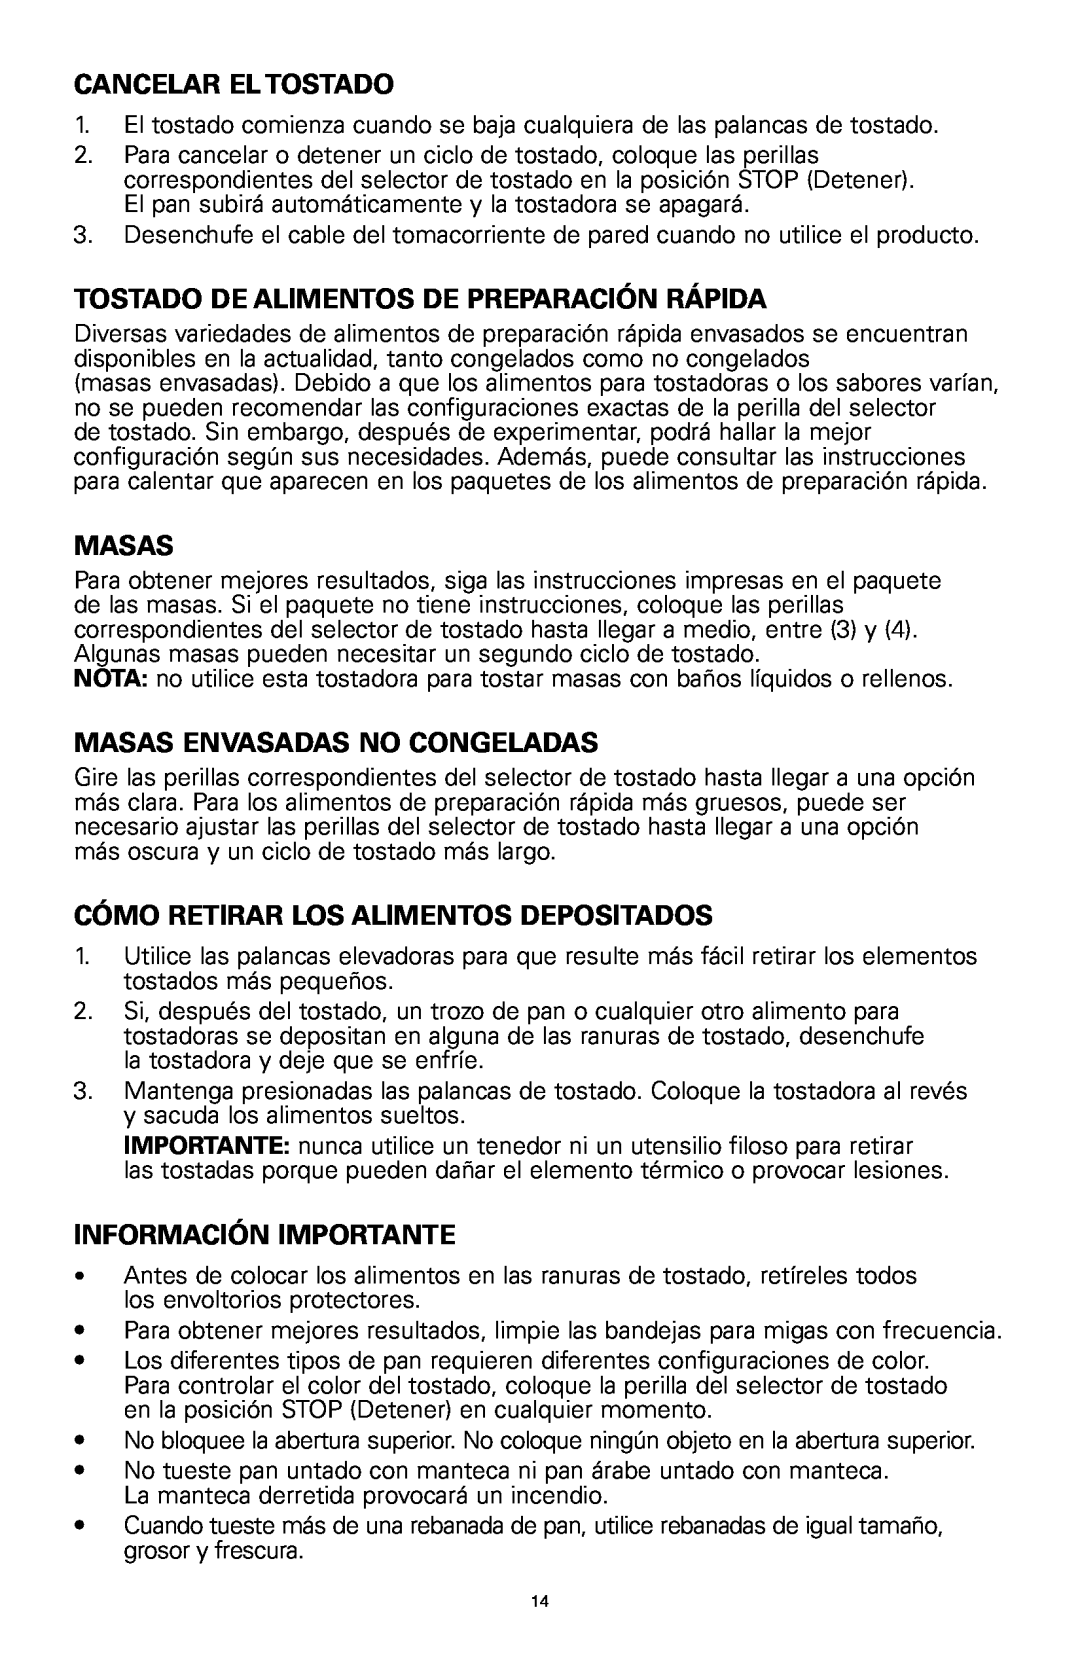 Rival 16042 manual Cancelar El Tostado, Tostado De Alimentos De Preparación Rápida, Masas Envasadas No Congeladas 